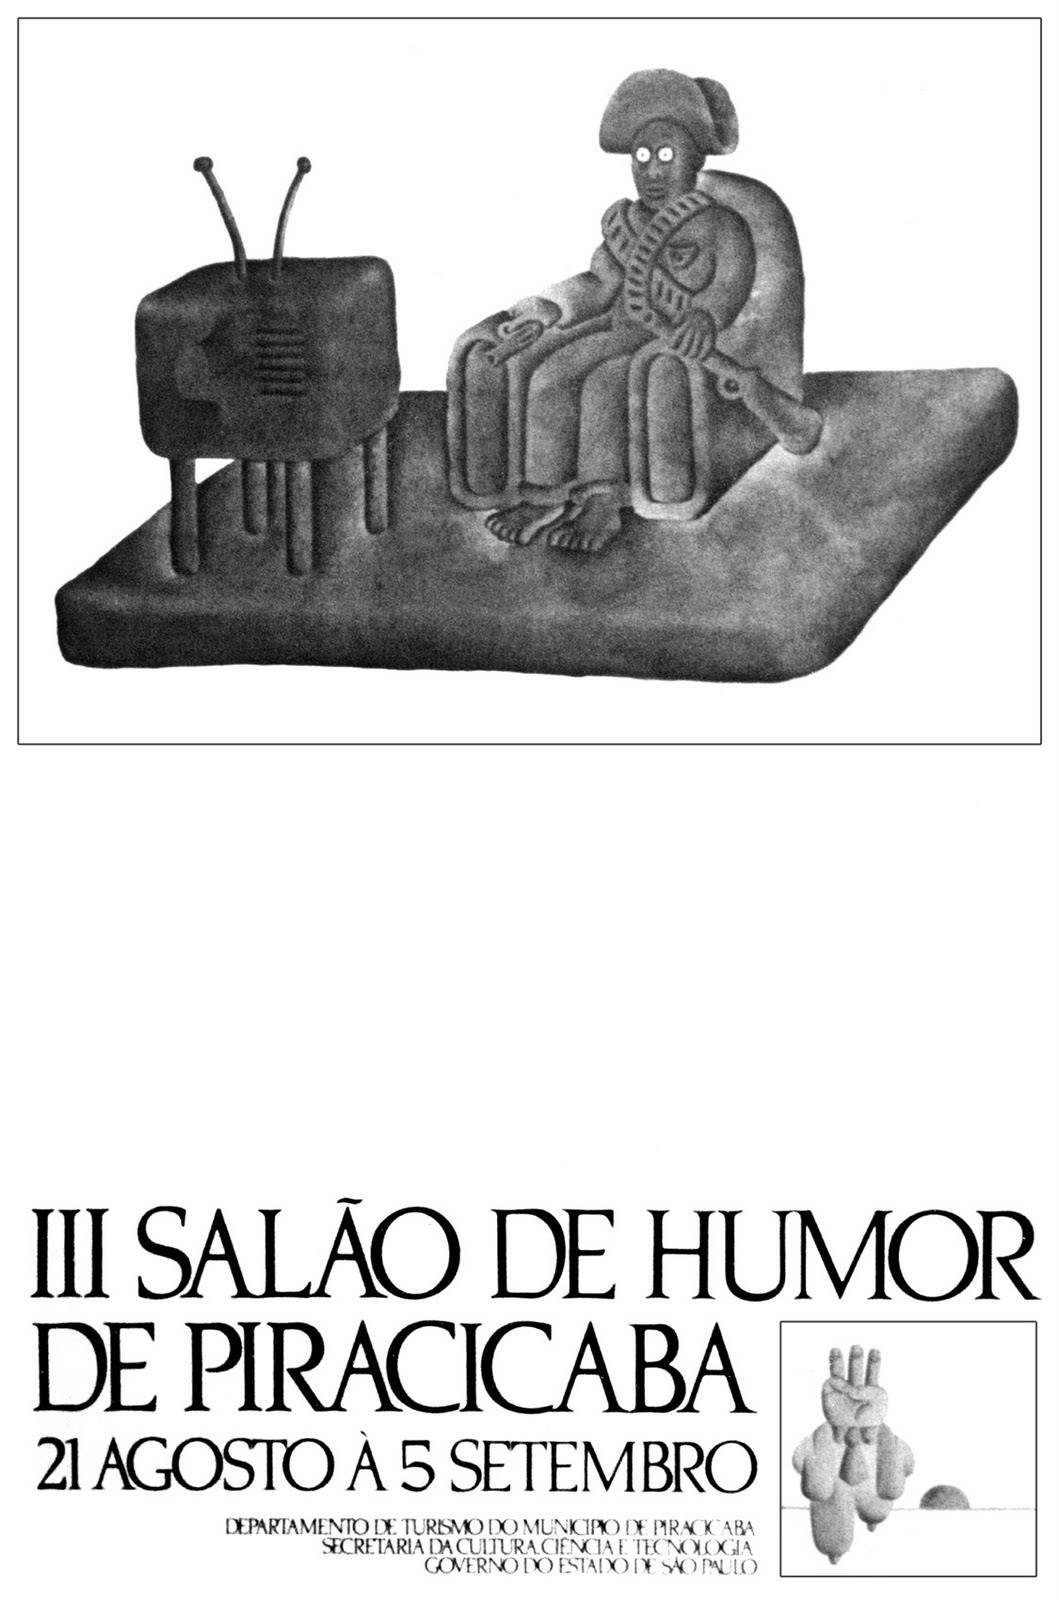 1976 – 3º Salão Internacional de Humor de Piracicaba